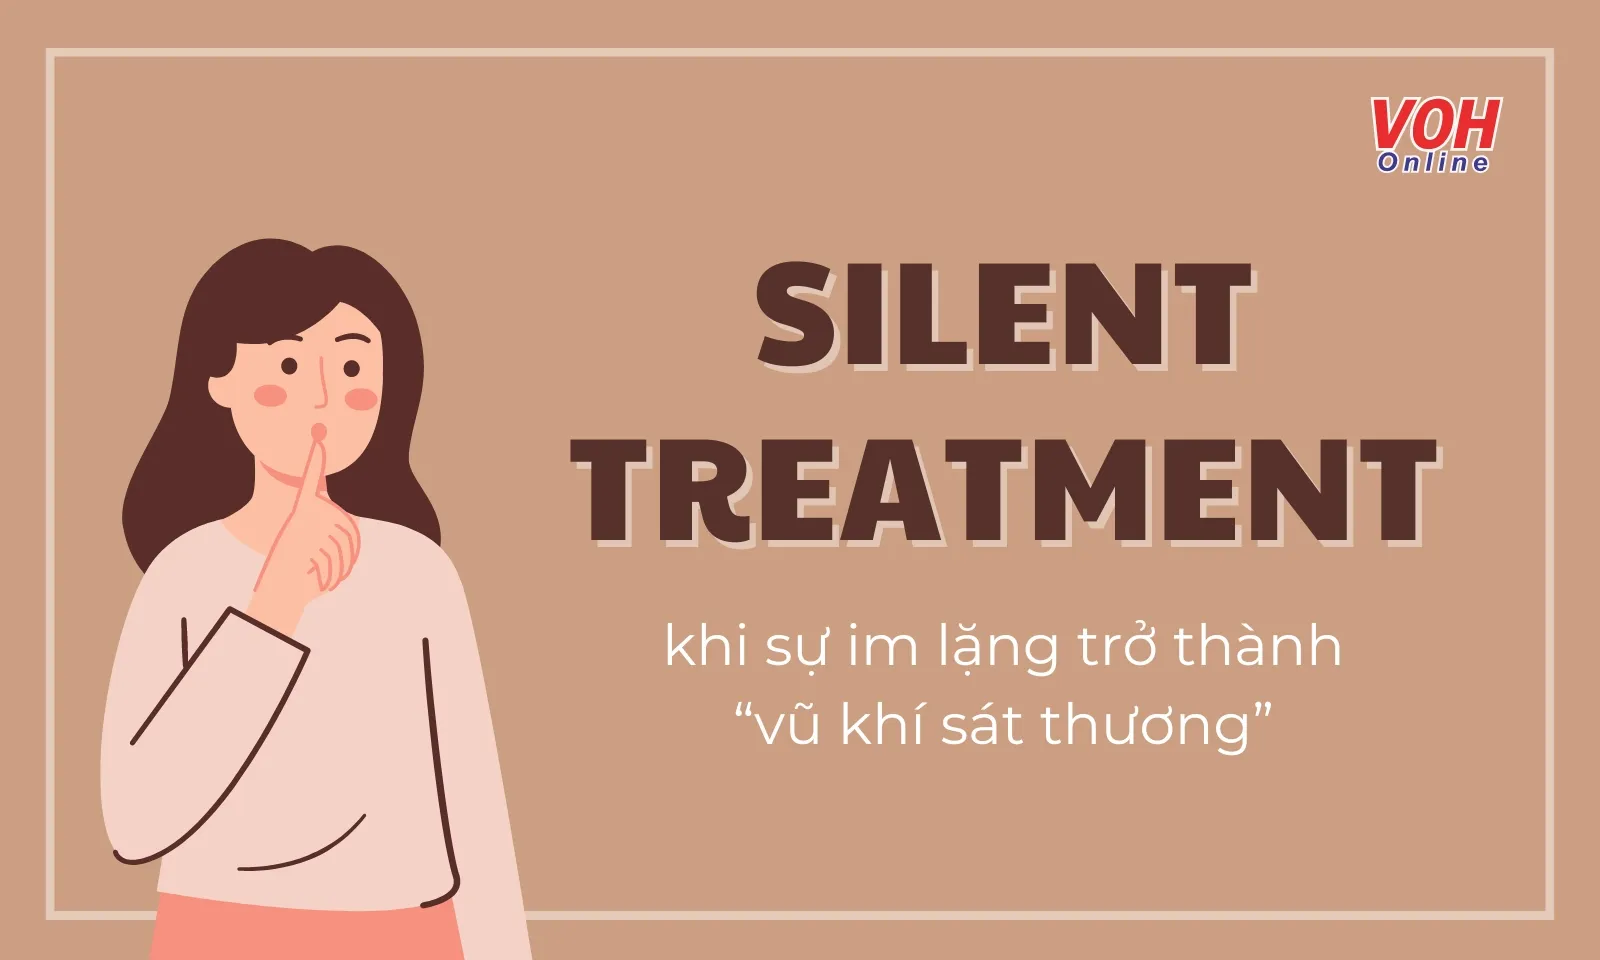 Silent Treatment là gì mà được ví là nỗi ám ảnh trong các mối quan hệ?